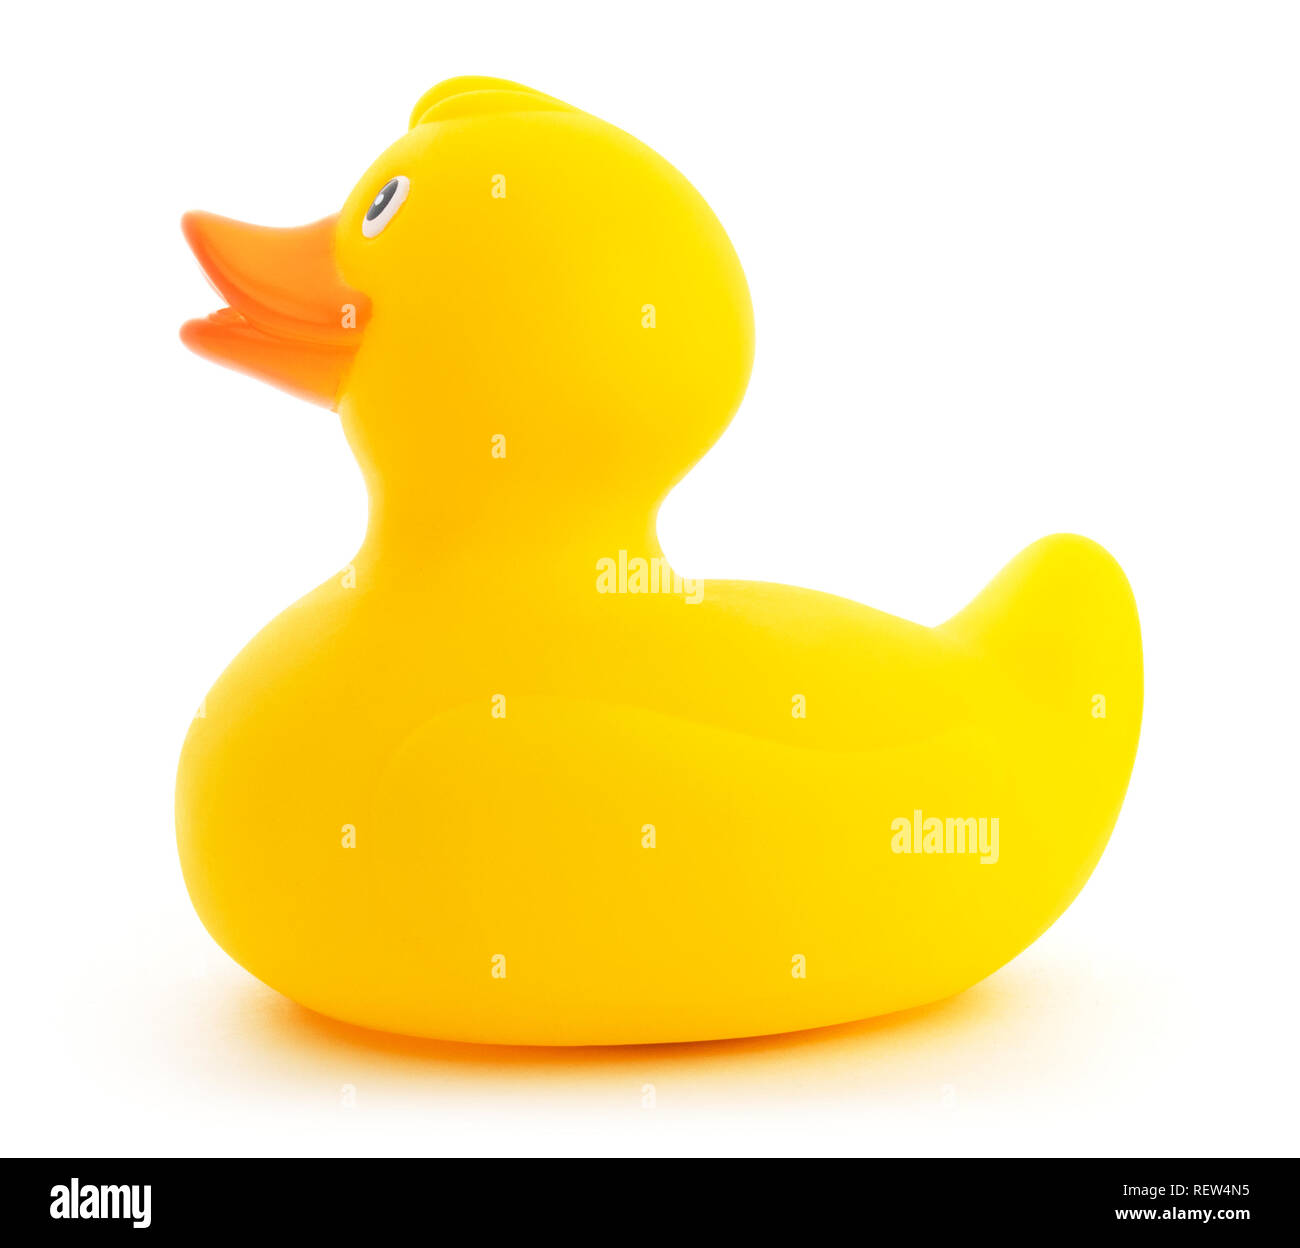 Gelb Kunststoff ducky Spielzeug isoliert. Seitenansicht eines niedlichen gelben Gummiente auf einem weißen Hintergrund. Stockfoto